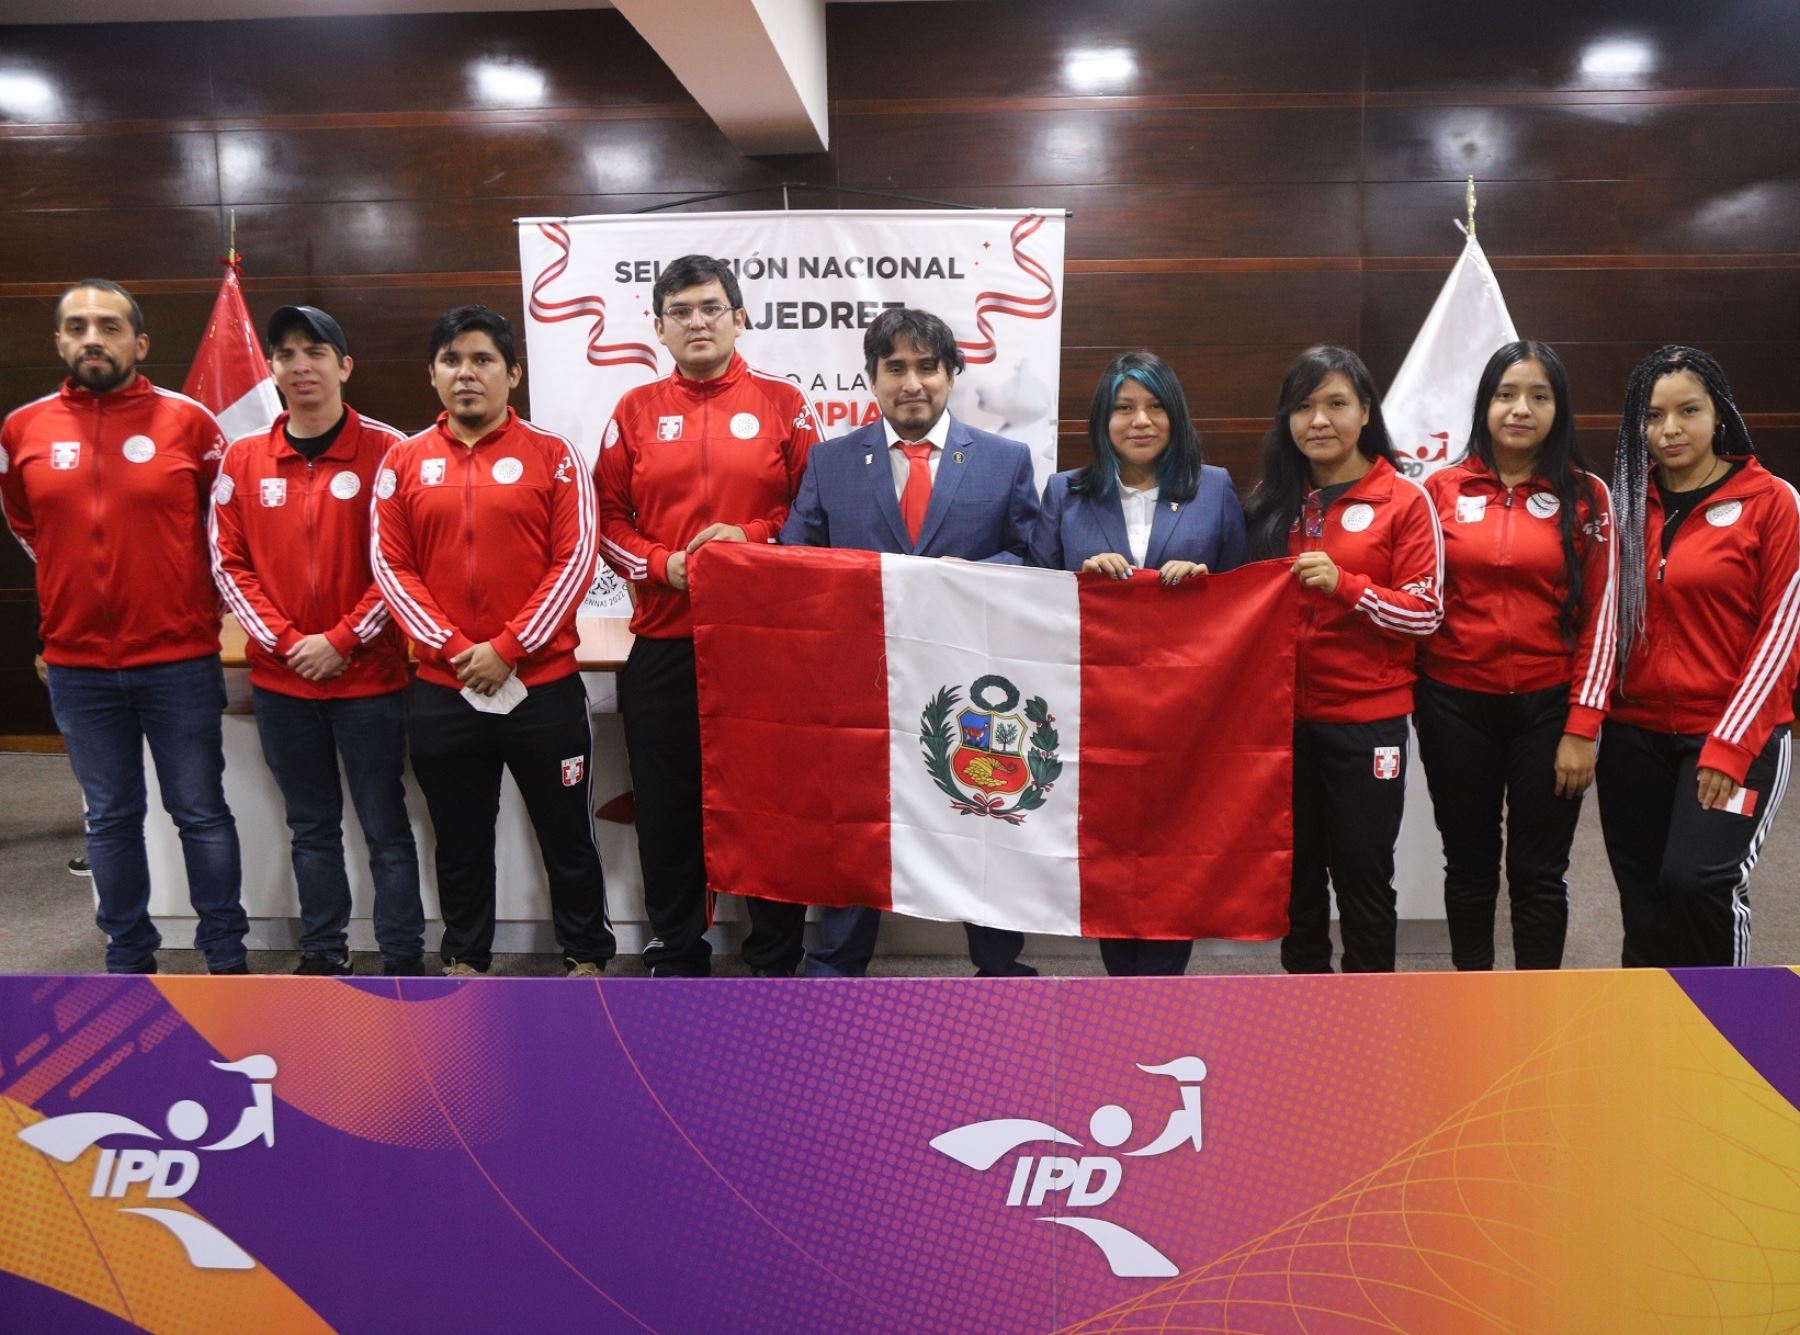 La selección peruana de ajedrez participará en la 44° Olimpiada a realizarse en la ciudad de Chennai en la India, del 27 de julio al 10 de agosto.